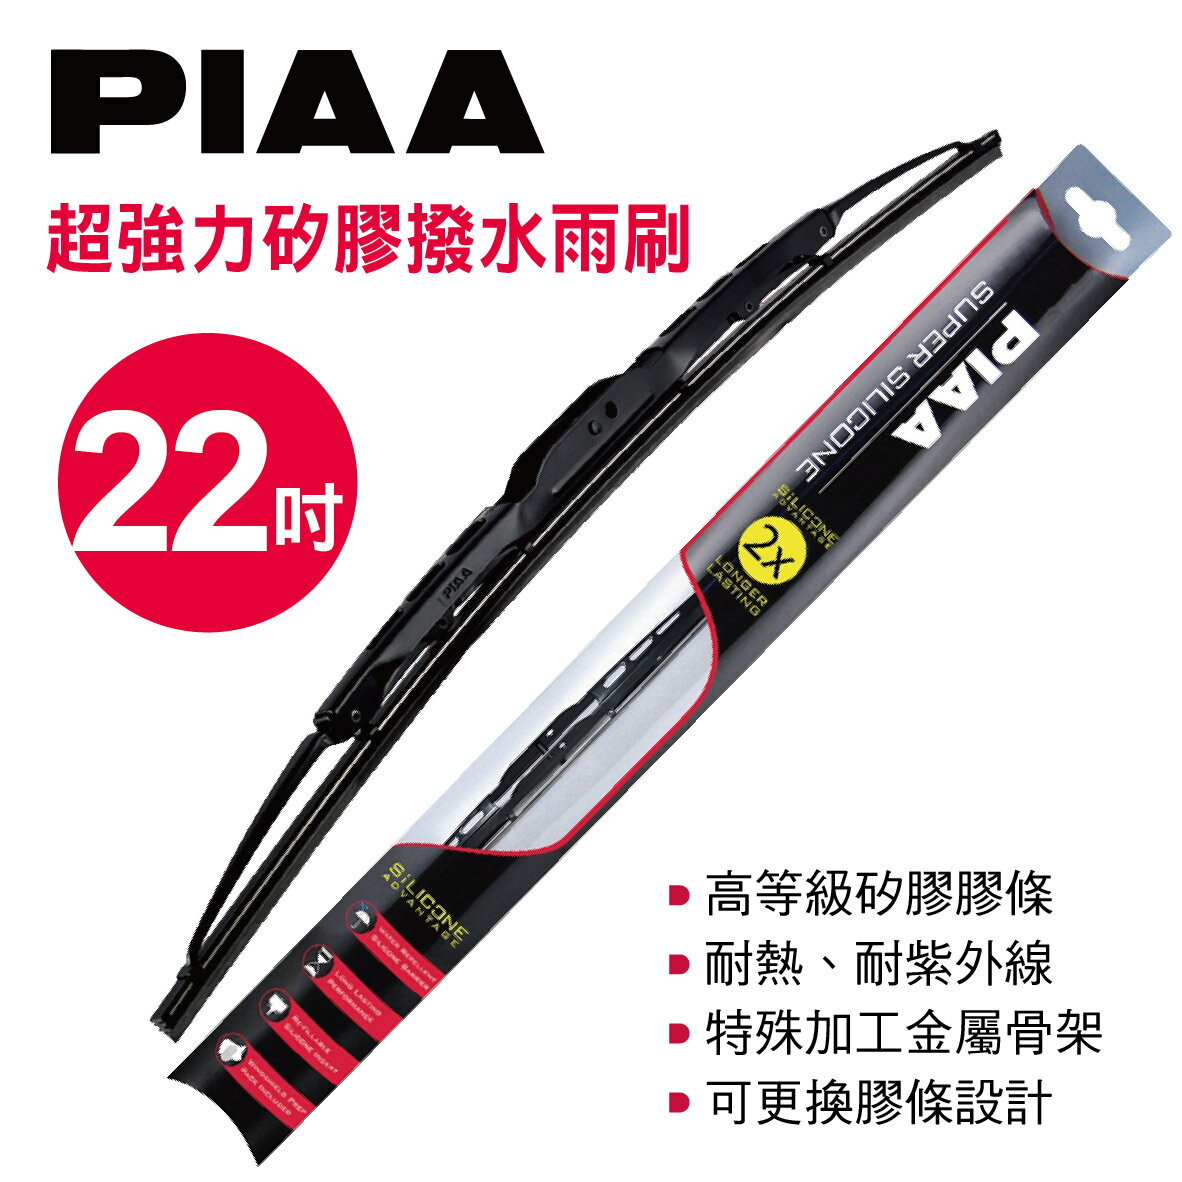 真便宜 PIAA 超強力矽膠撥水雨刷 22吋(550mm)單支(日系車適用)